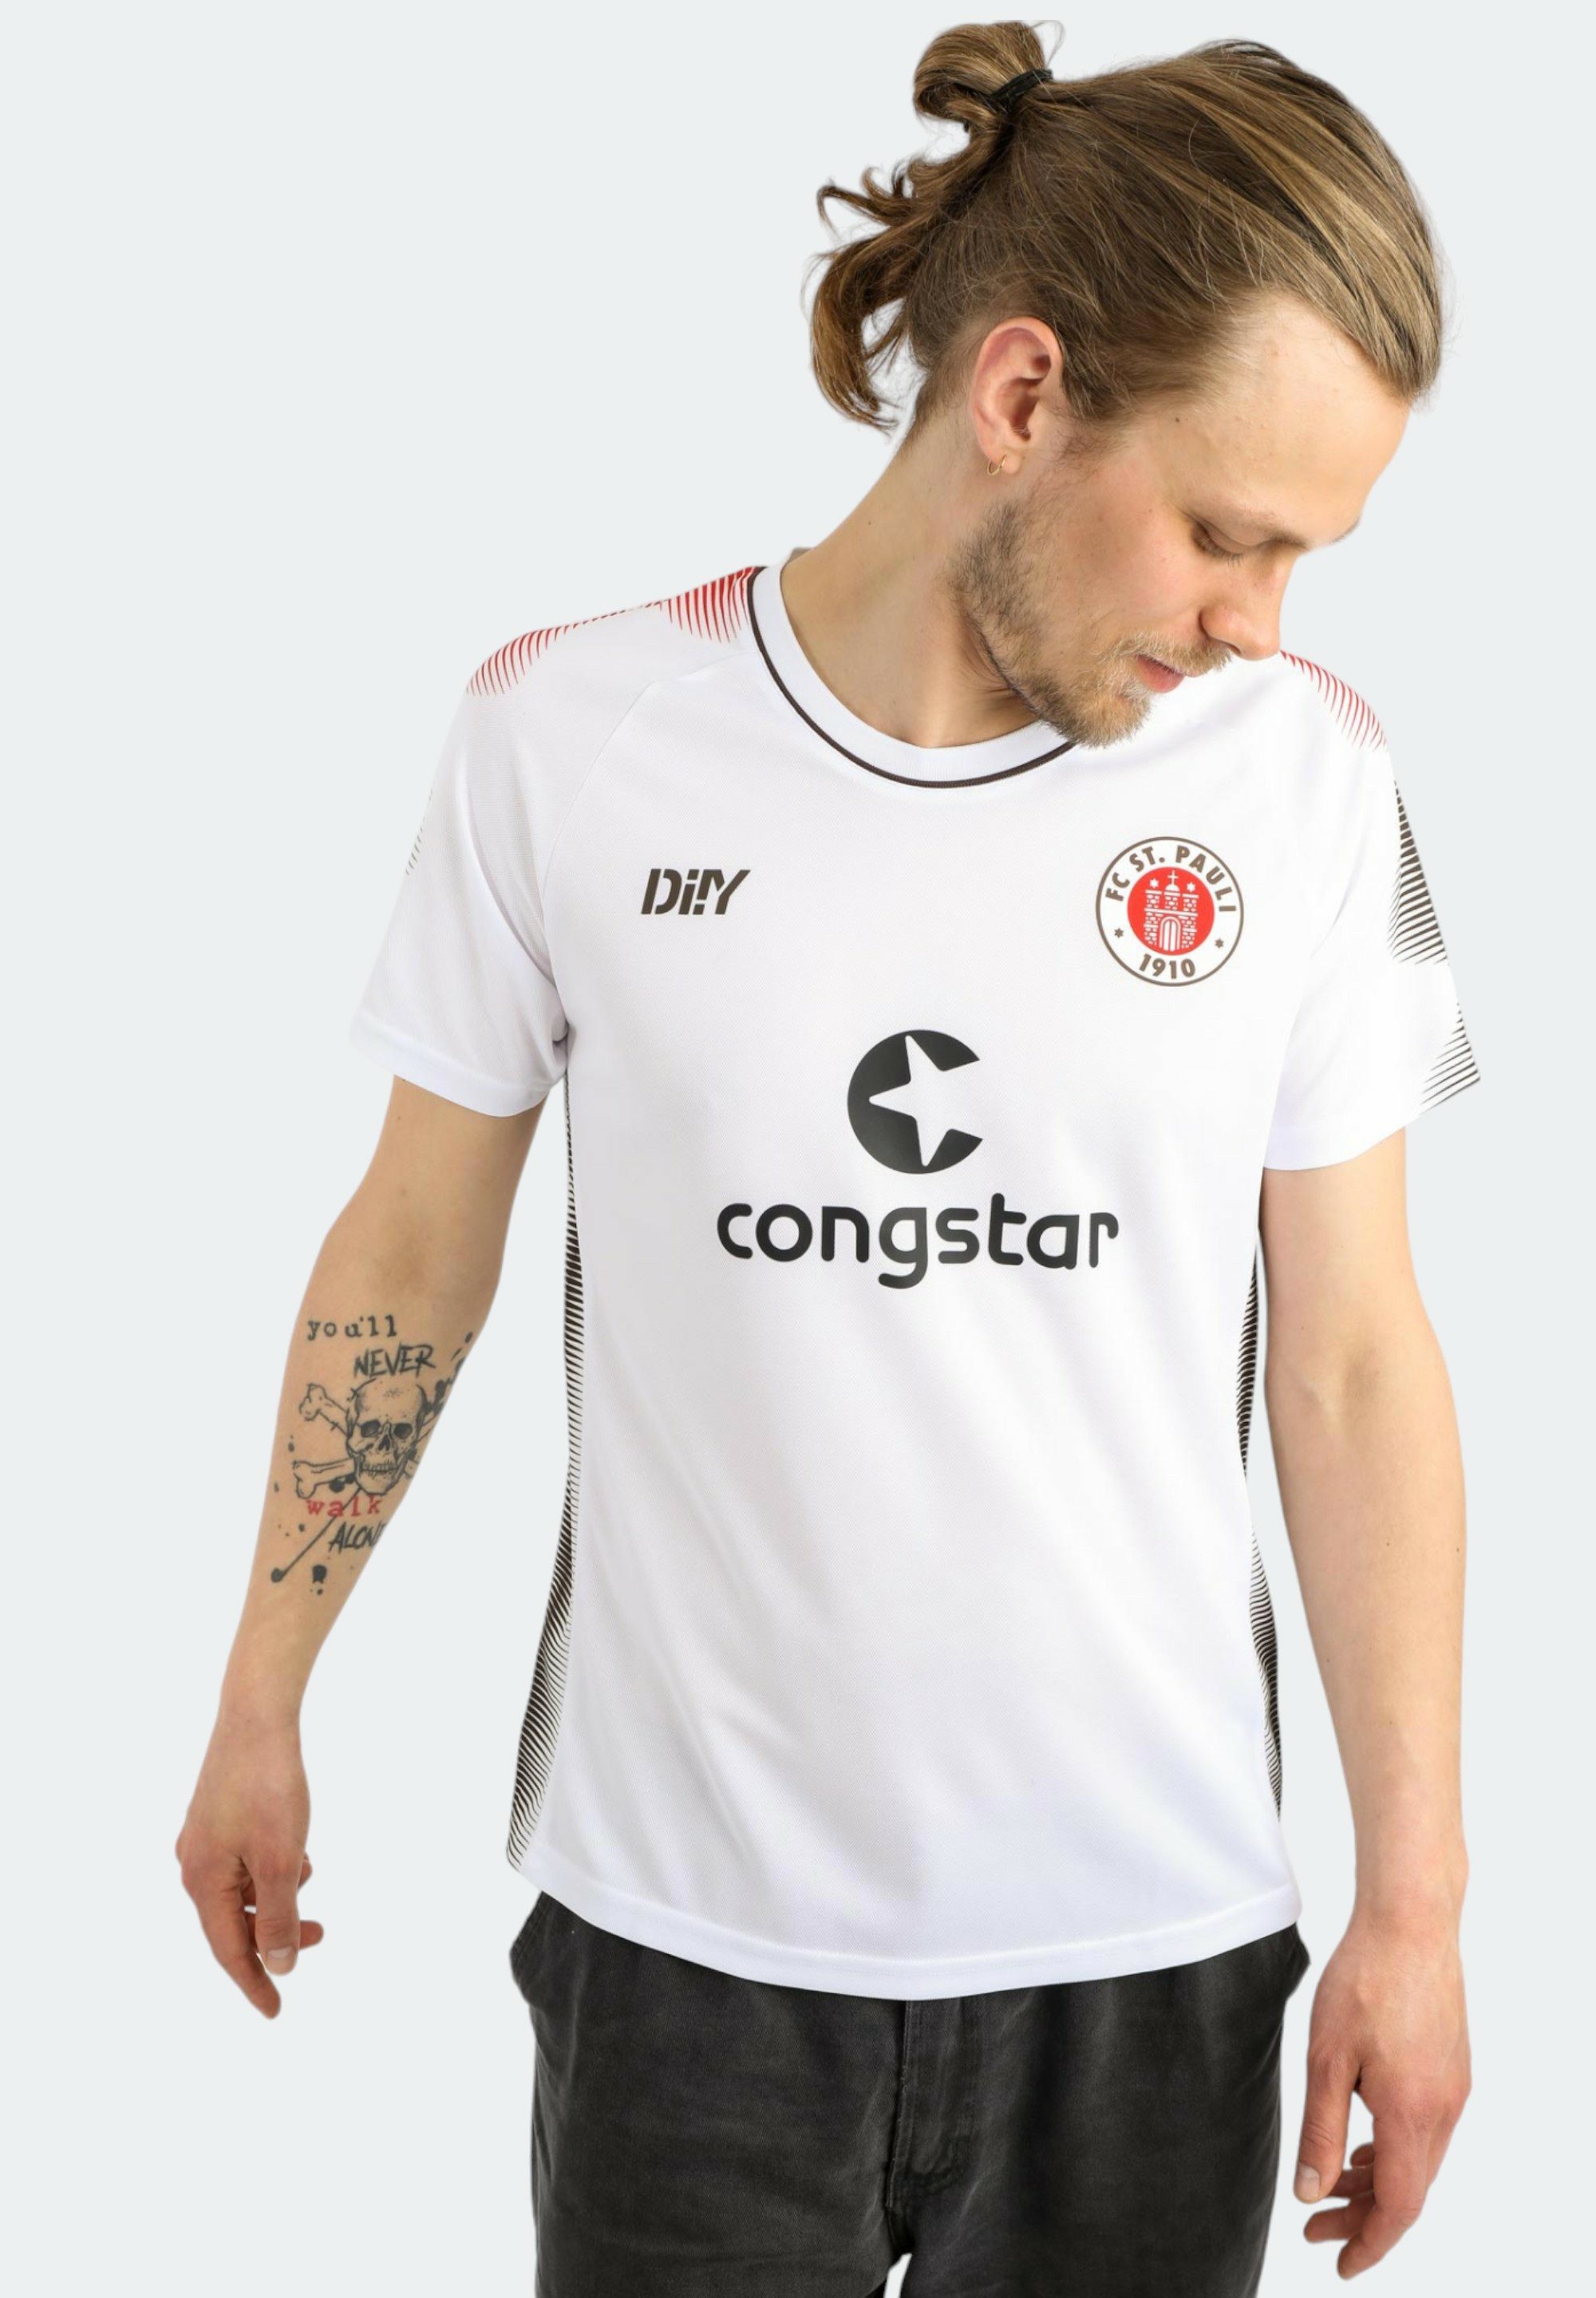 St. Pauli Fußballtrikot Auswärts Tailliert Shirt mit Druck